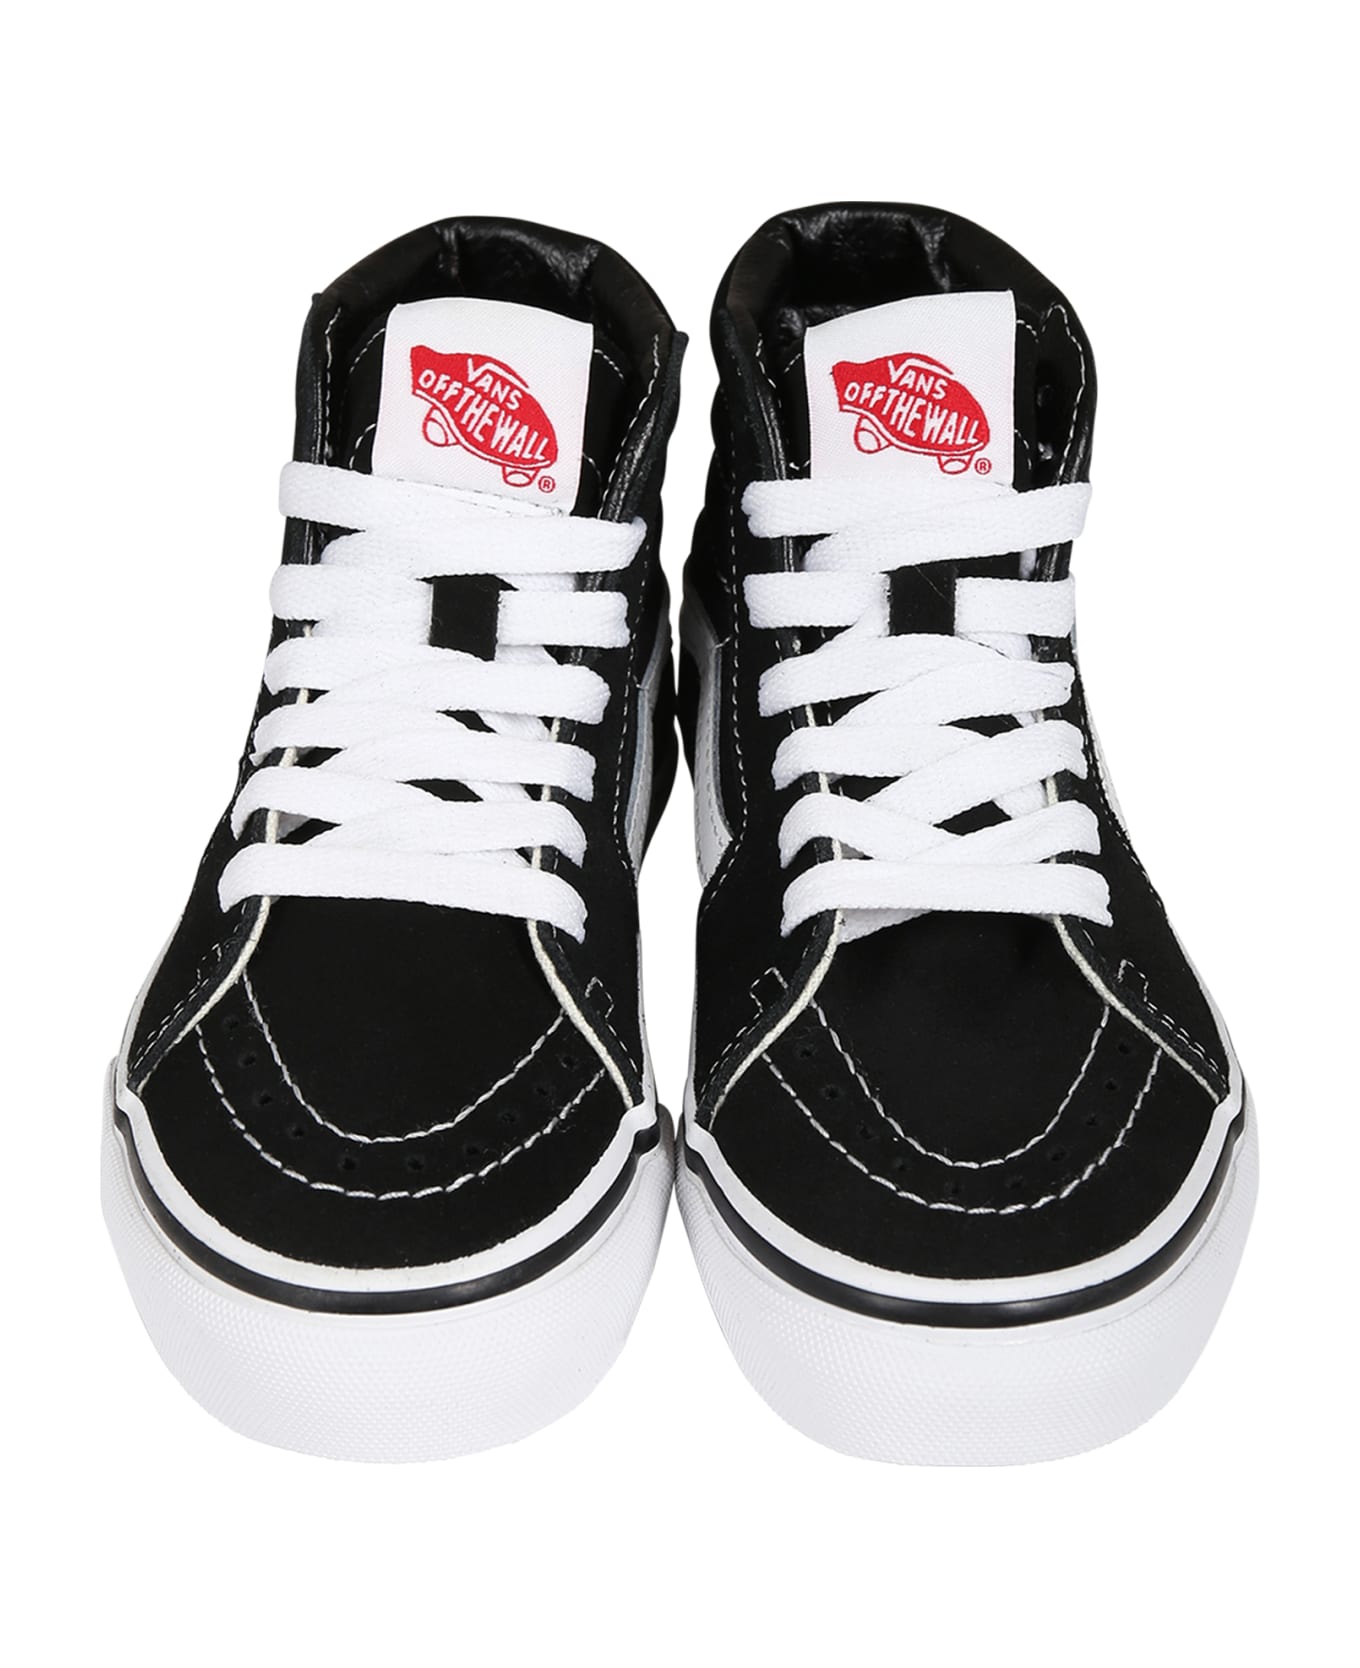 Vans Black Sk8-hi Sneakers For Kids - Black